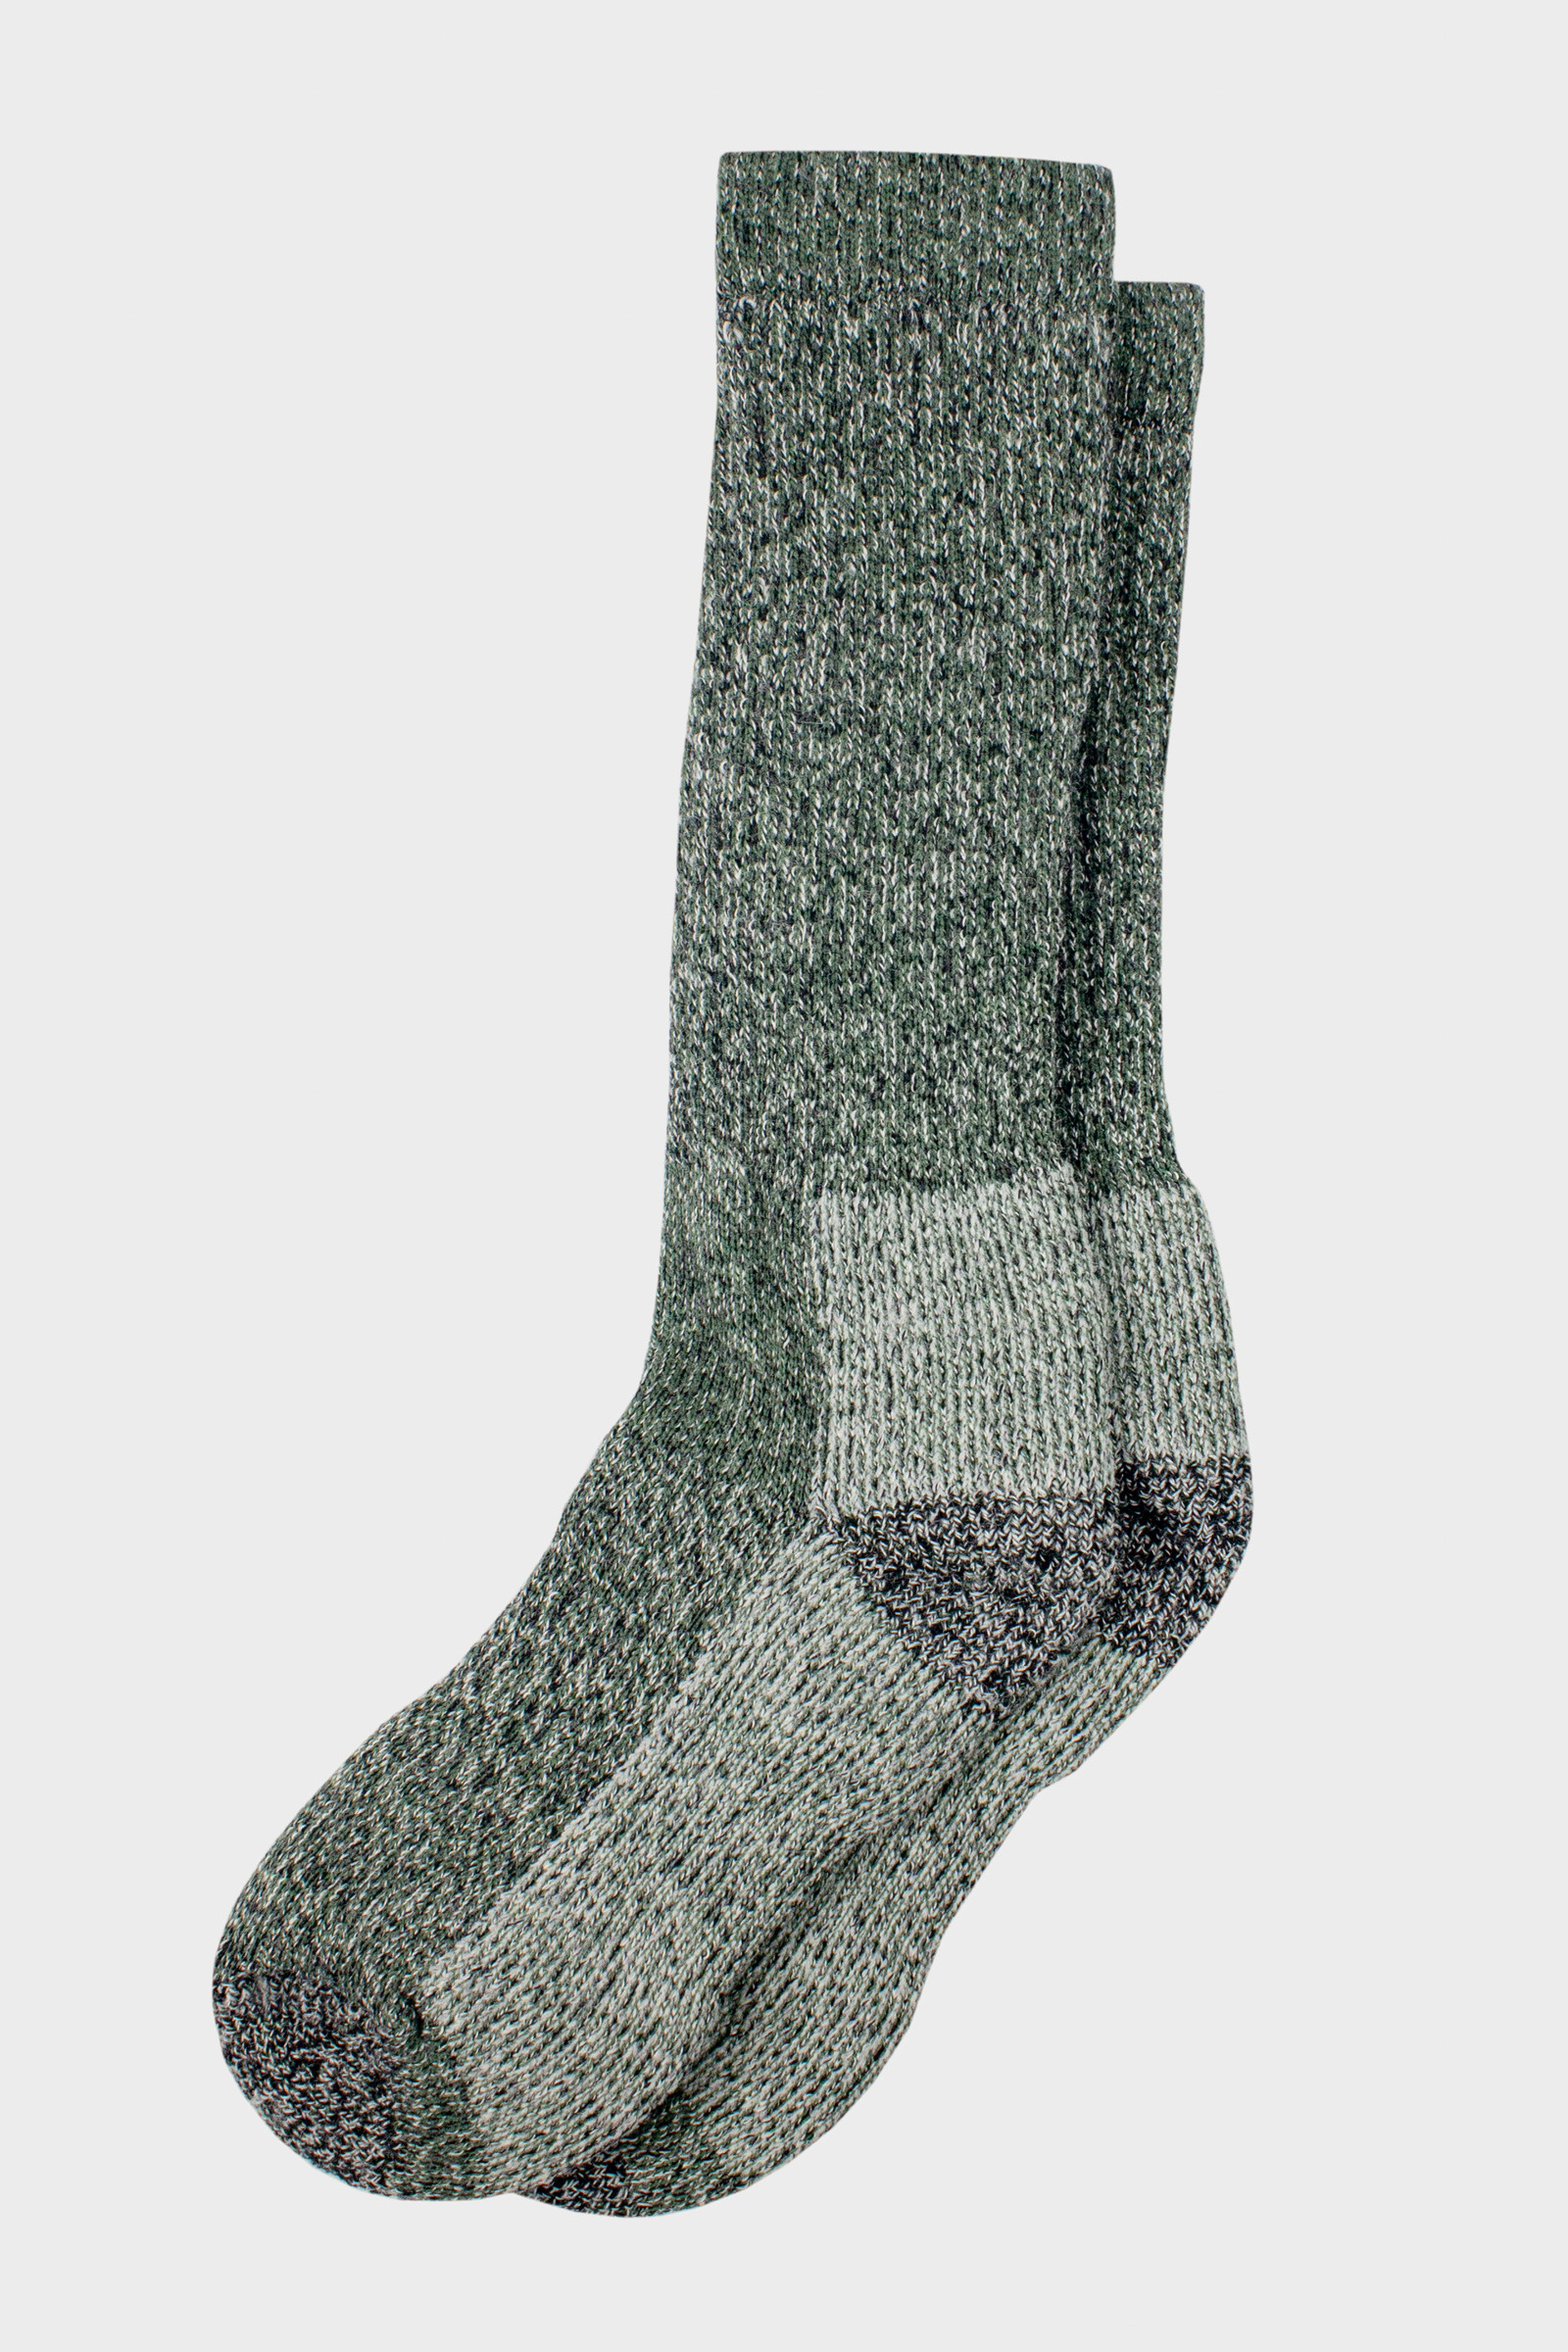 Woolrich Calcetines de lana merino para hombre, fabricados en Estados  Unidos, calcetines de senderismo hechos de 78% lana de cordero merino con  arco